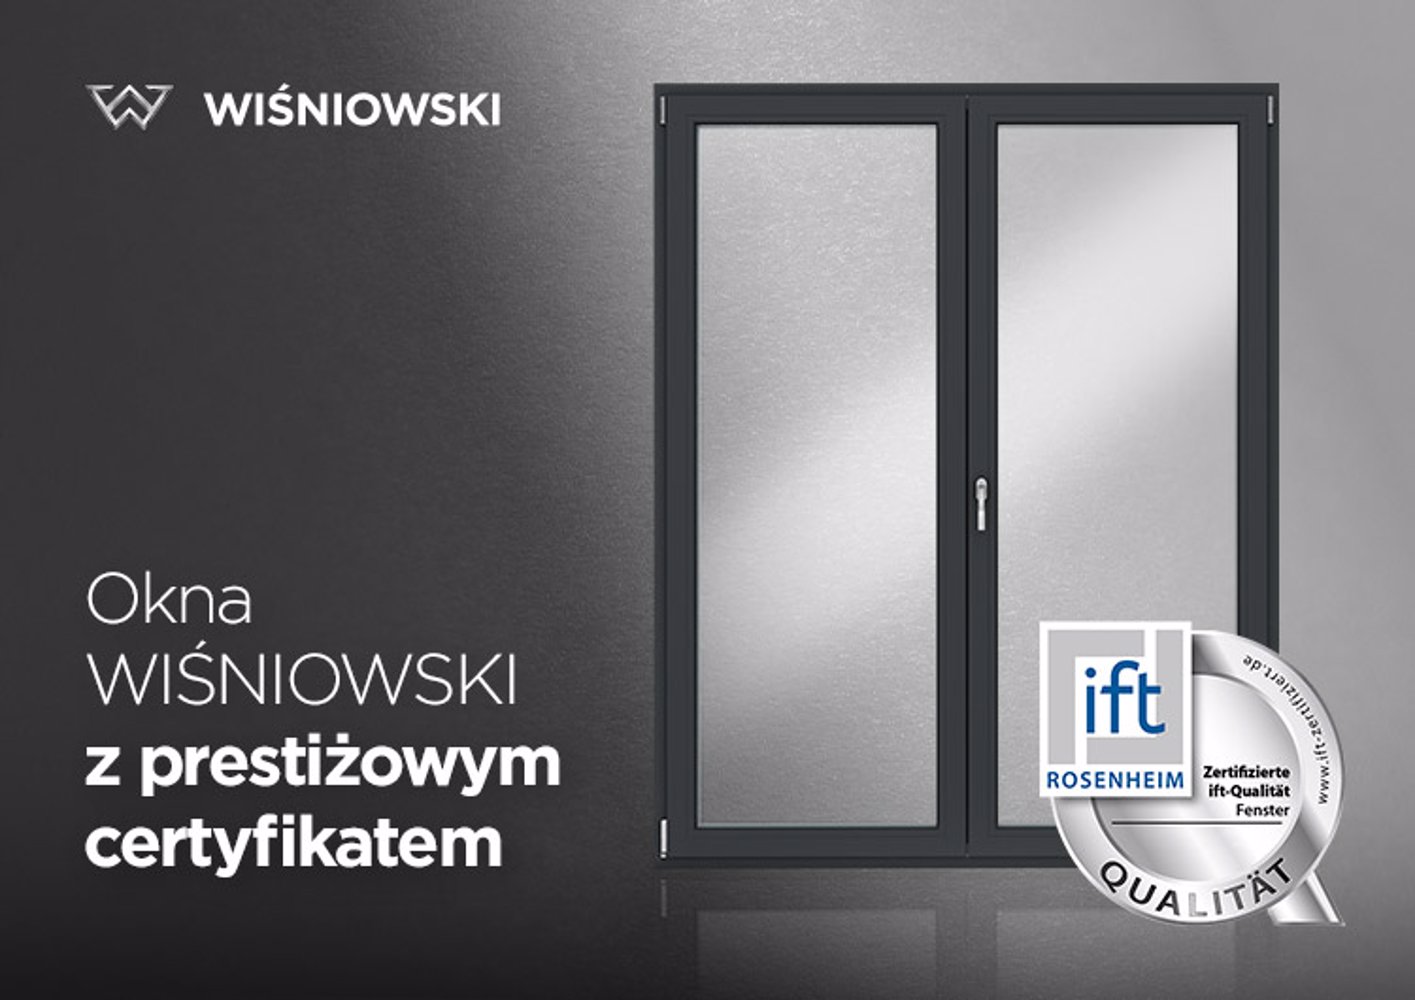 okna-wisniowski-z-certyfikatem-ift-quality-silver-instytutu-rosenheim